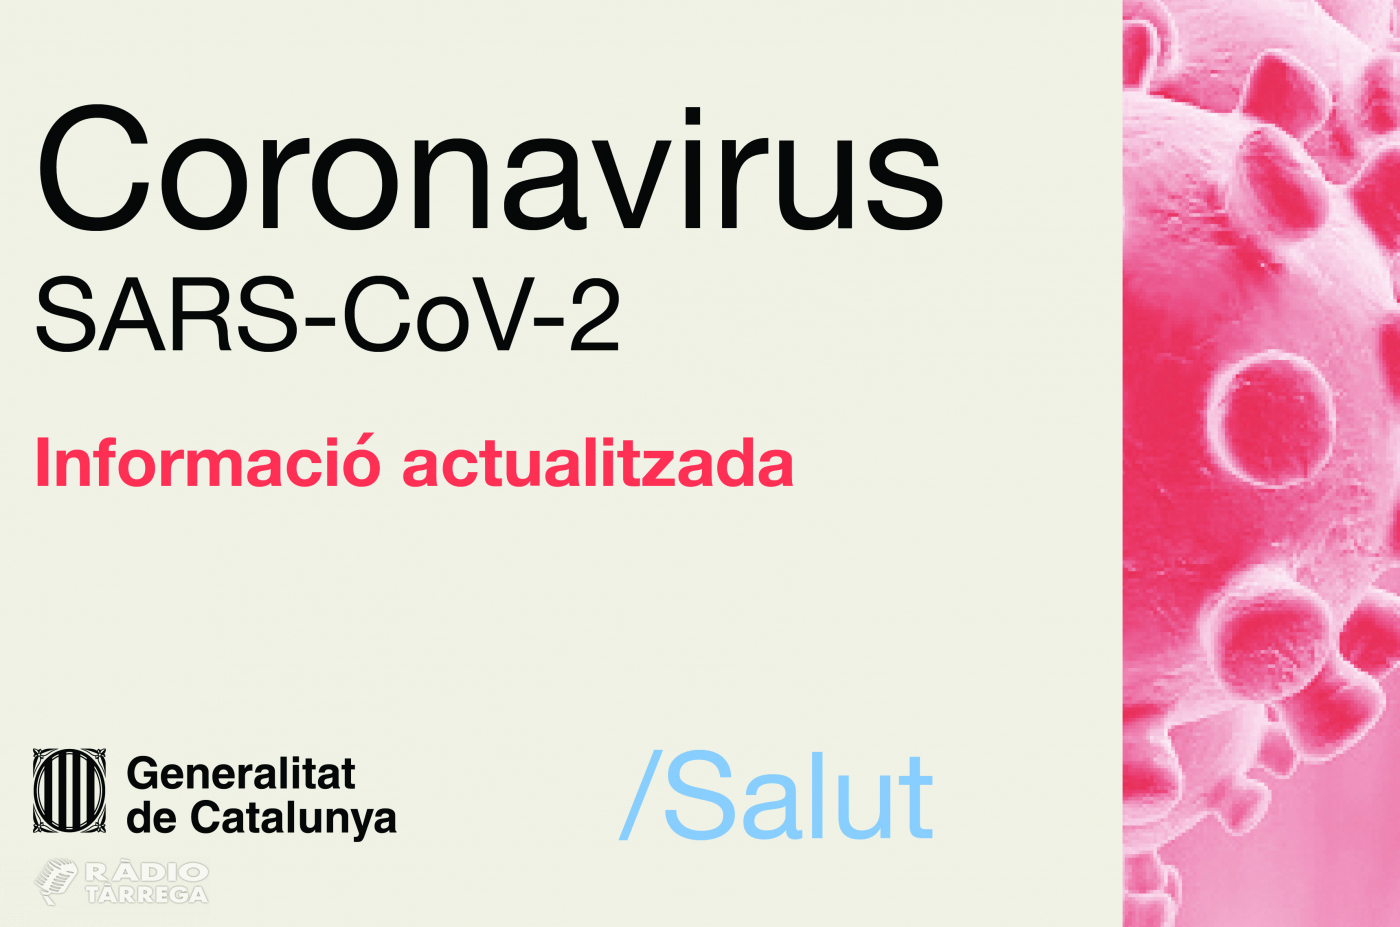 Baixen fins als 191 els hospitalitzats amb coronavirus a la regió sanitària de Lleida, després de dos dies d'augments